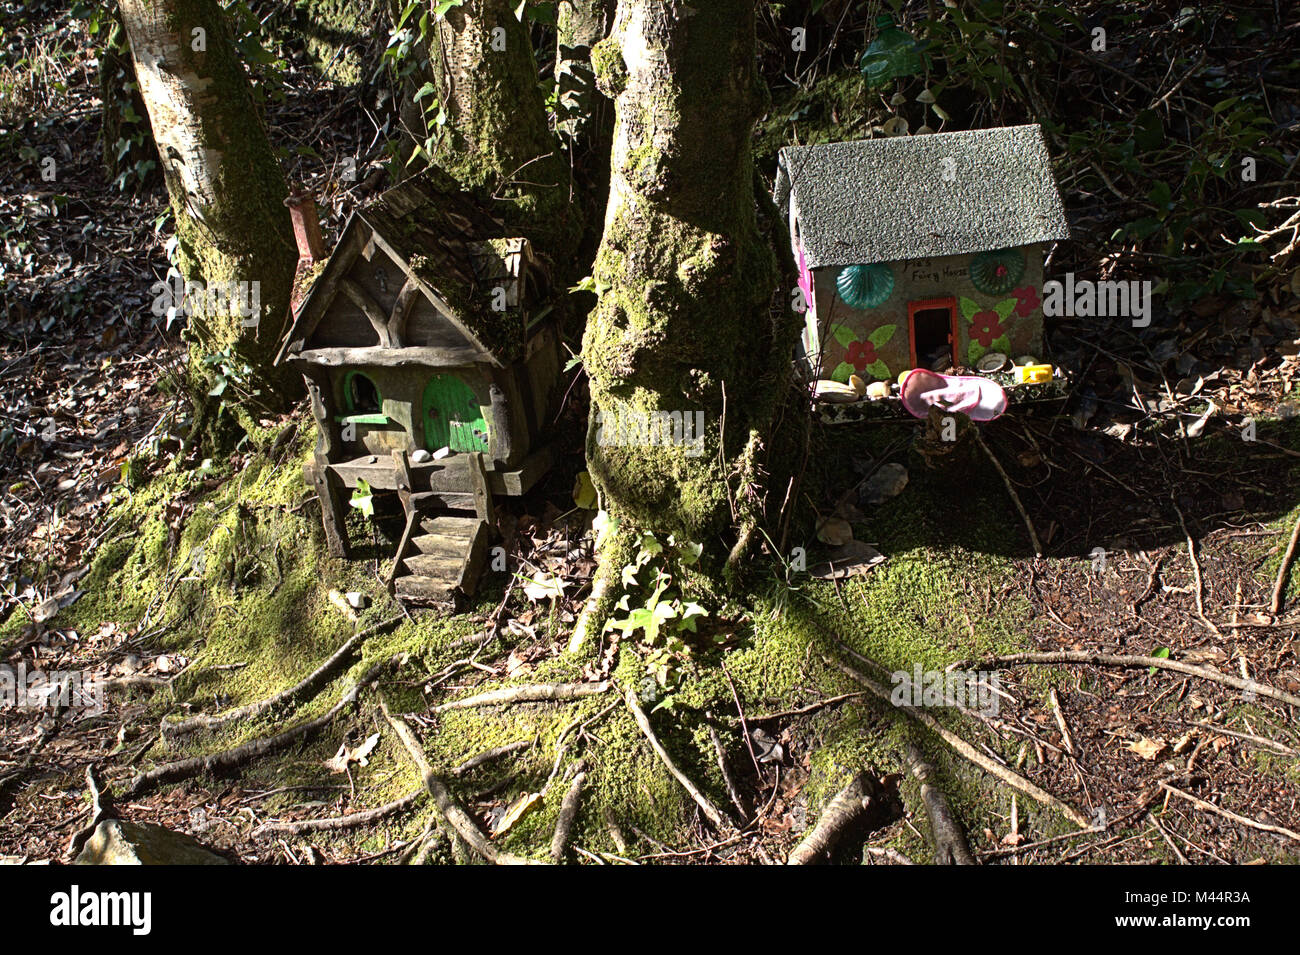 Fairy Häuser links im Wald. Irland hat eine Geschichte der Häuser im Holz für den Wald Feen Links zum Leben. Stockfoto